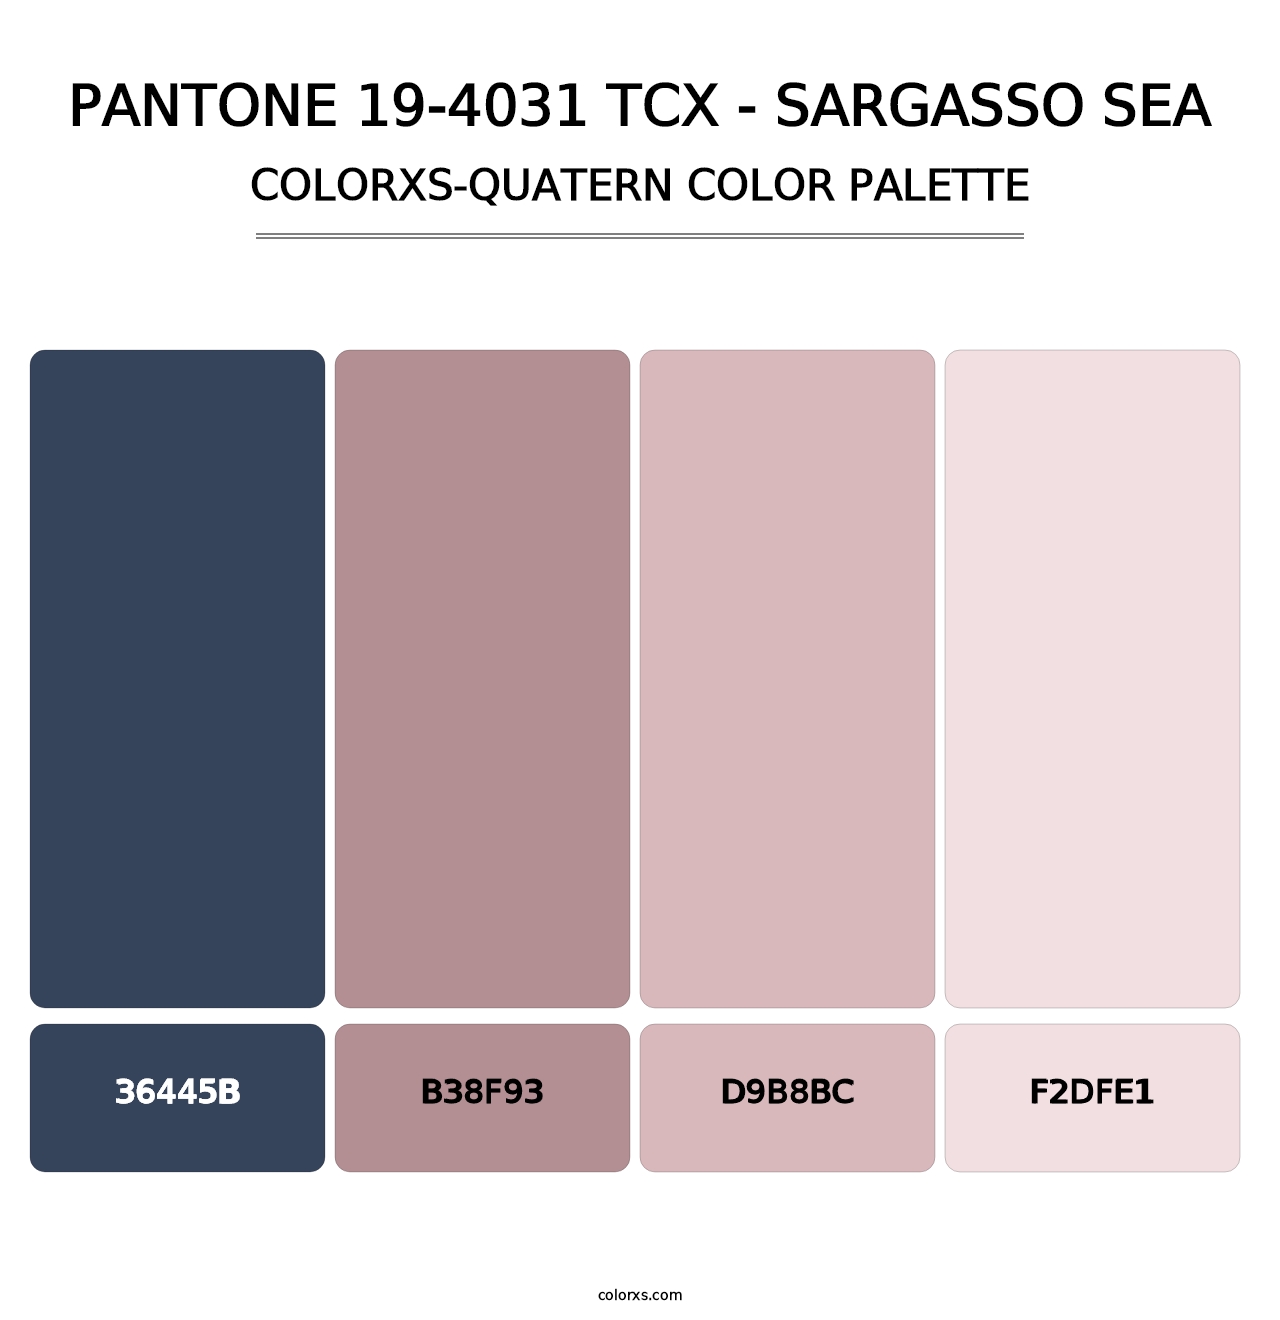 PANTONE 19-4031 TCX - Sargasso Sea - Colorxs Quatern Palette